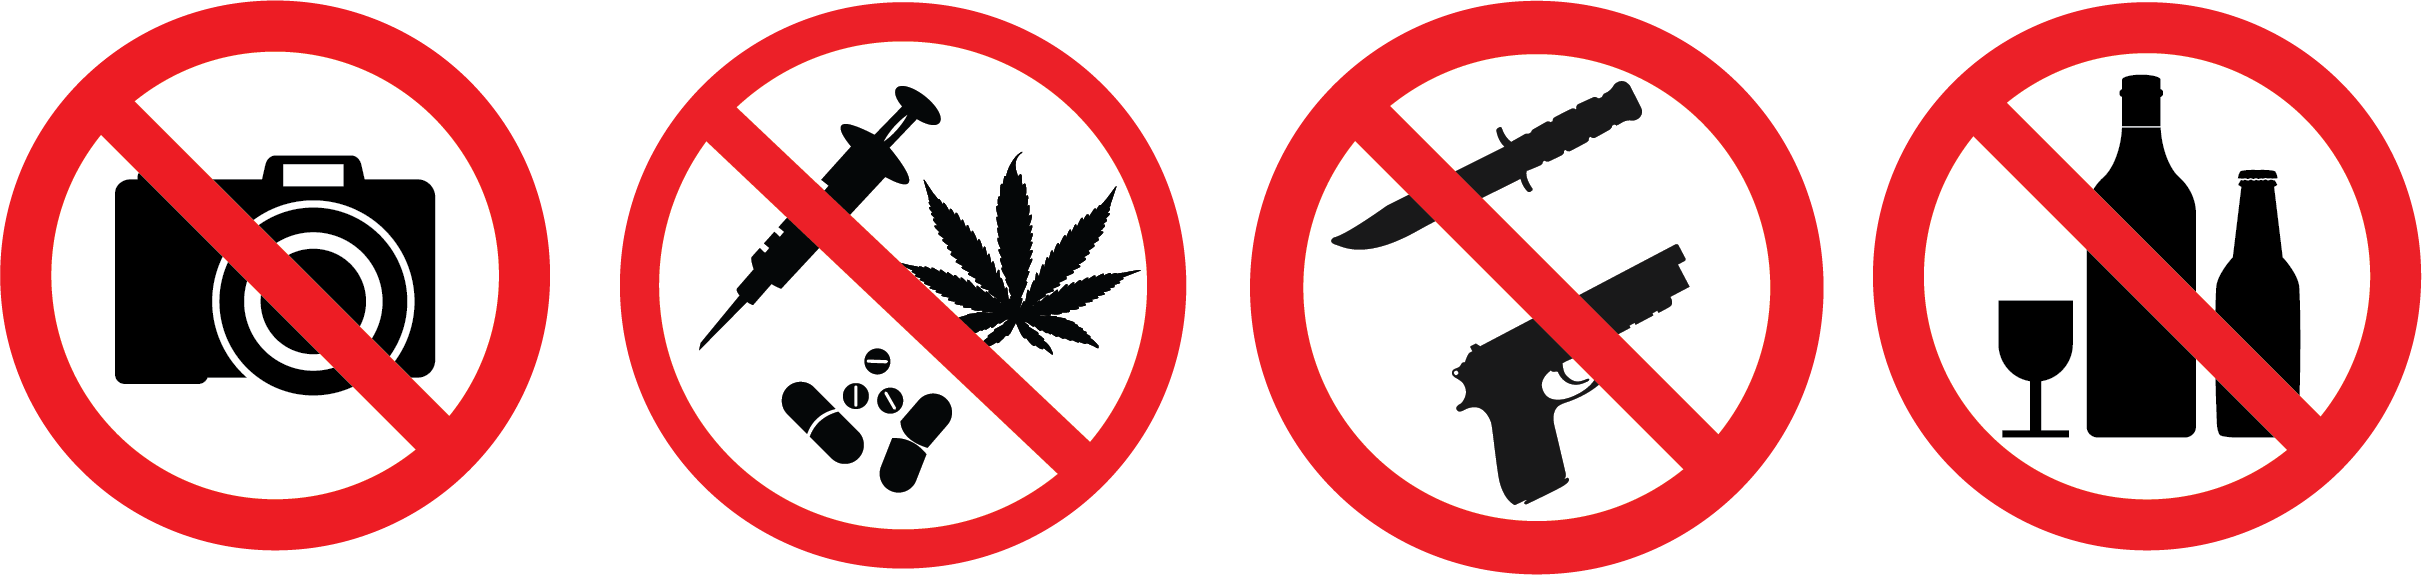 No cameras, no drugs, no weapons, no alcohol 